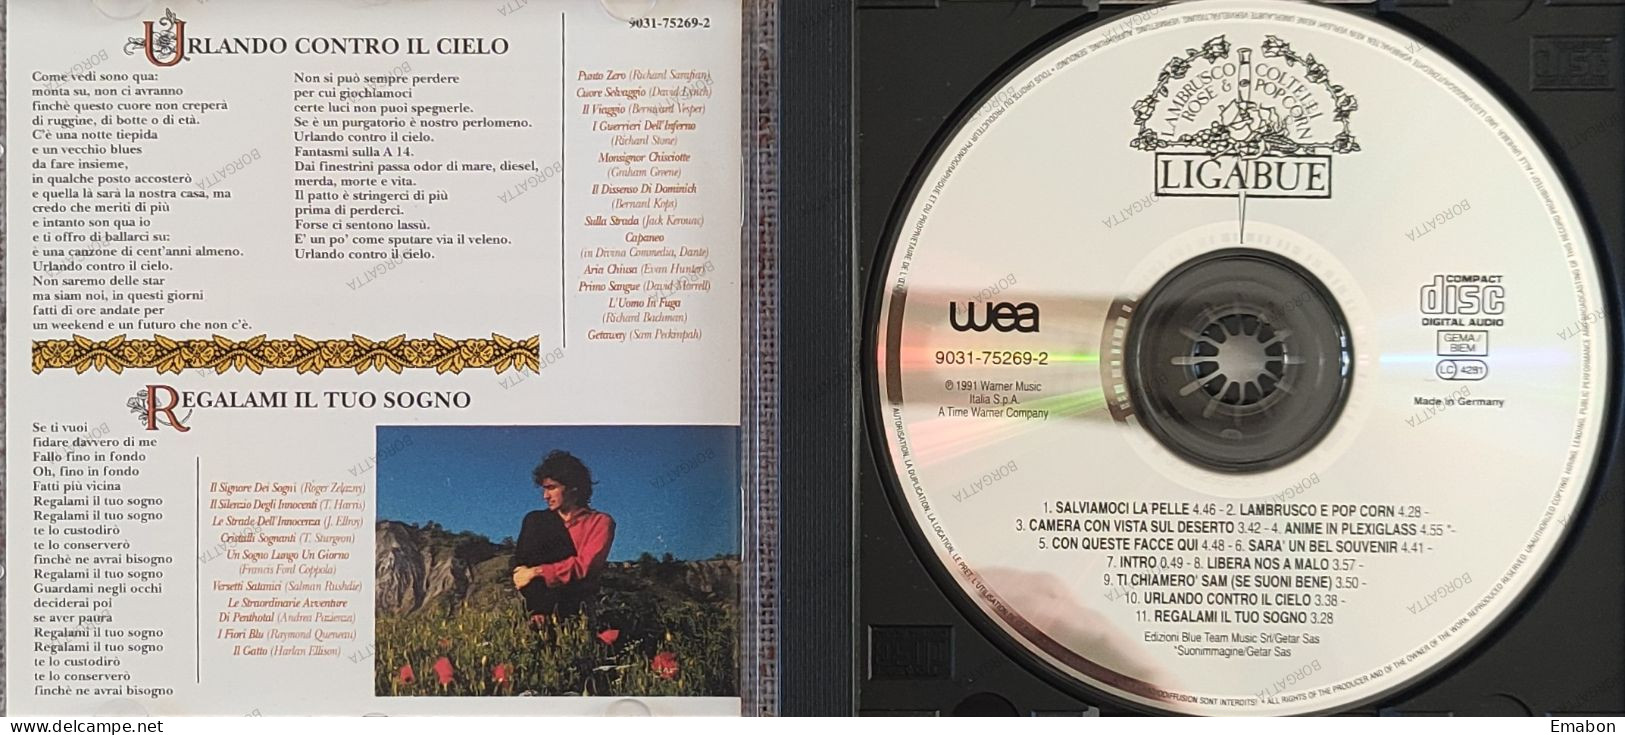 BORGATTA - ITALIANA  - Cd LIGABUE -  LAMBRUSCO, COLTELLI, ROSE & POP CORN - WARNER MUSIC 1991 -  USATO In Buono Stato - Otros - Canción Italiana